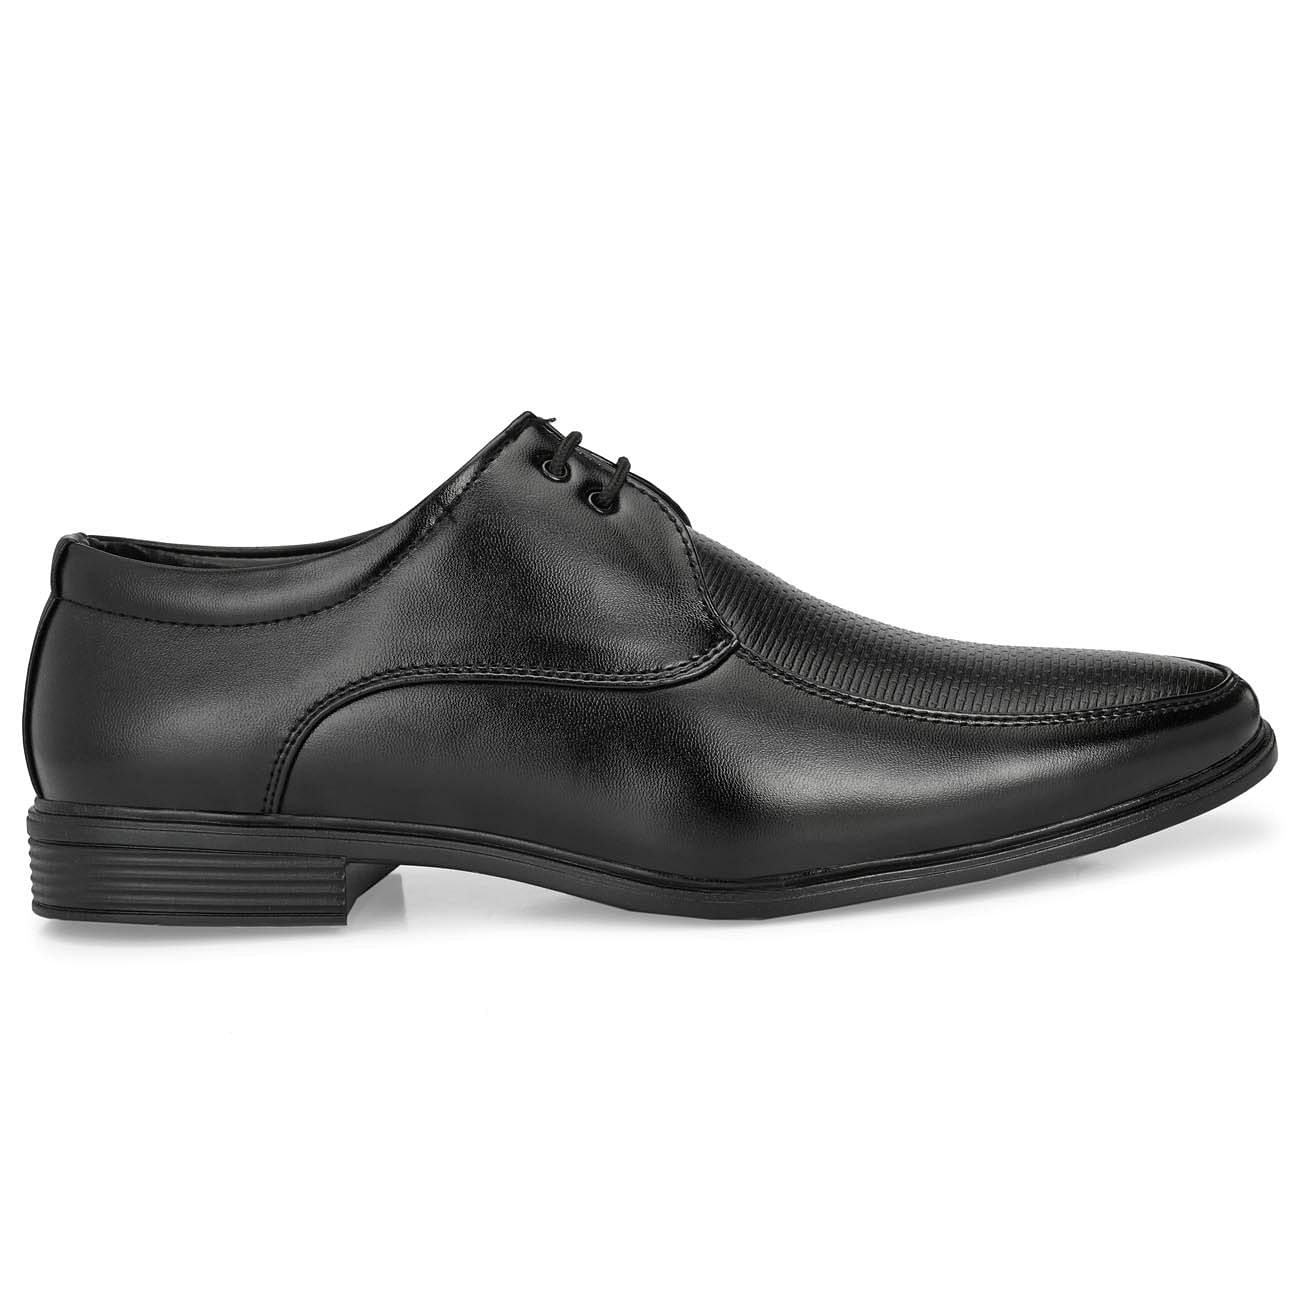 Pair-it Men derby Formal Shoes - Black - MN-RYDER212